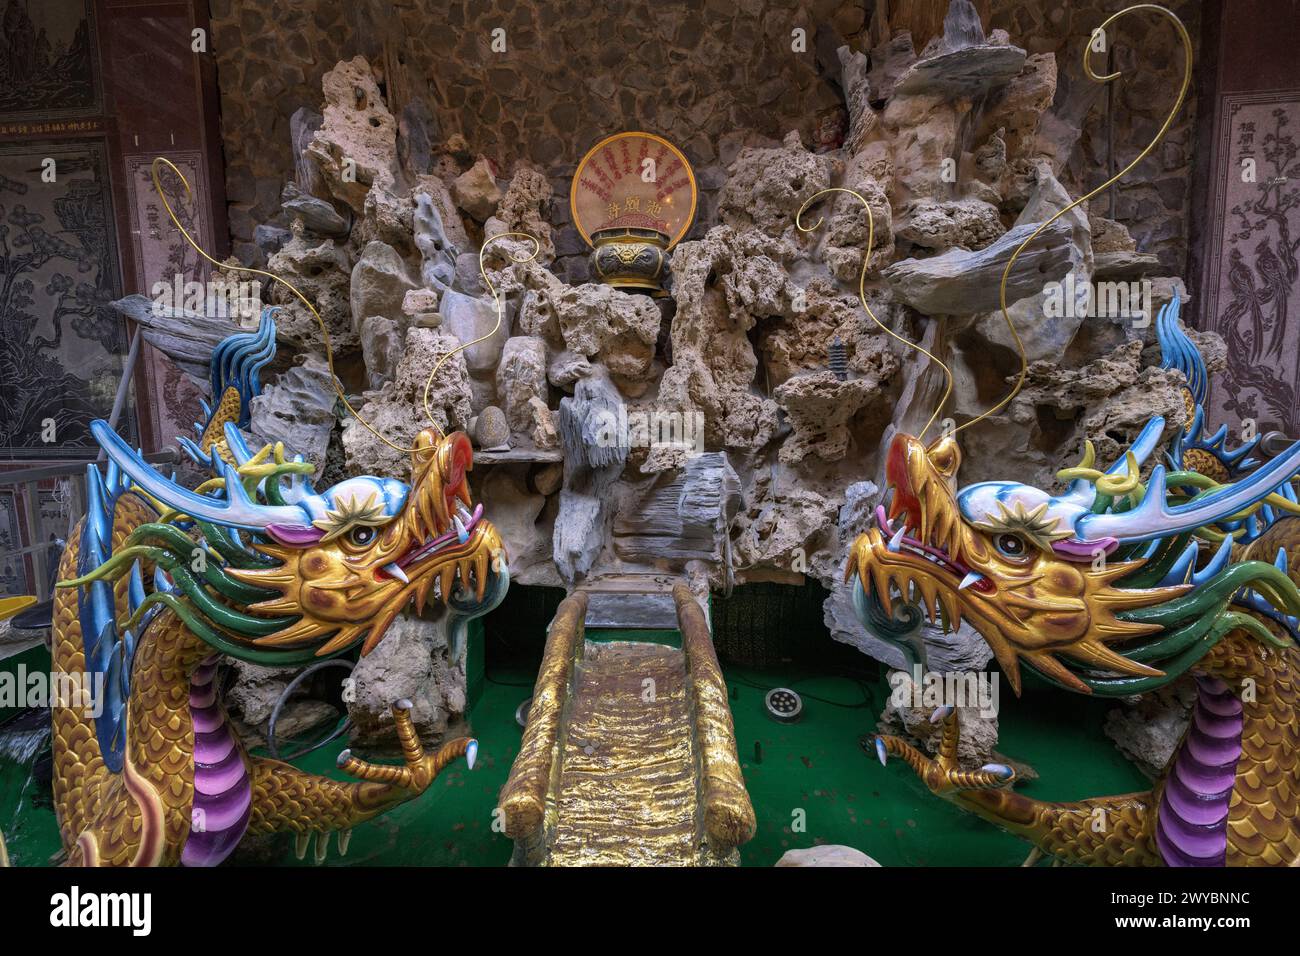 Teich mit mythologischen Schnitzereien im Sicao Dazhong Tempel, der Handwerkskunst und kulturelles Erbe zeigt Stockfoto